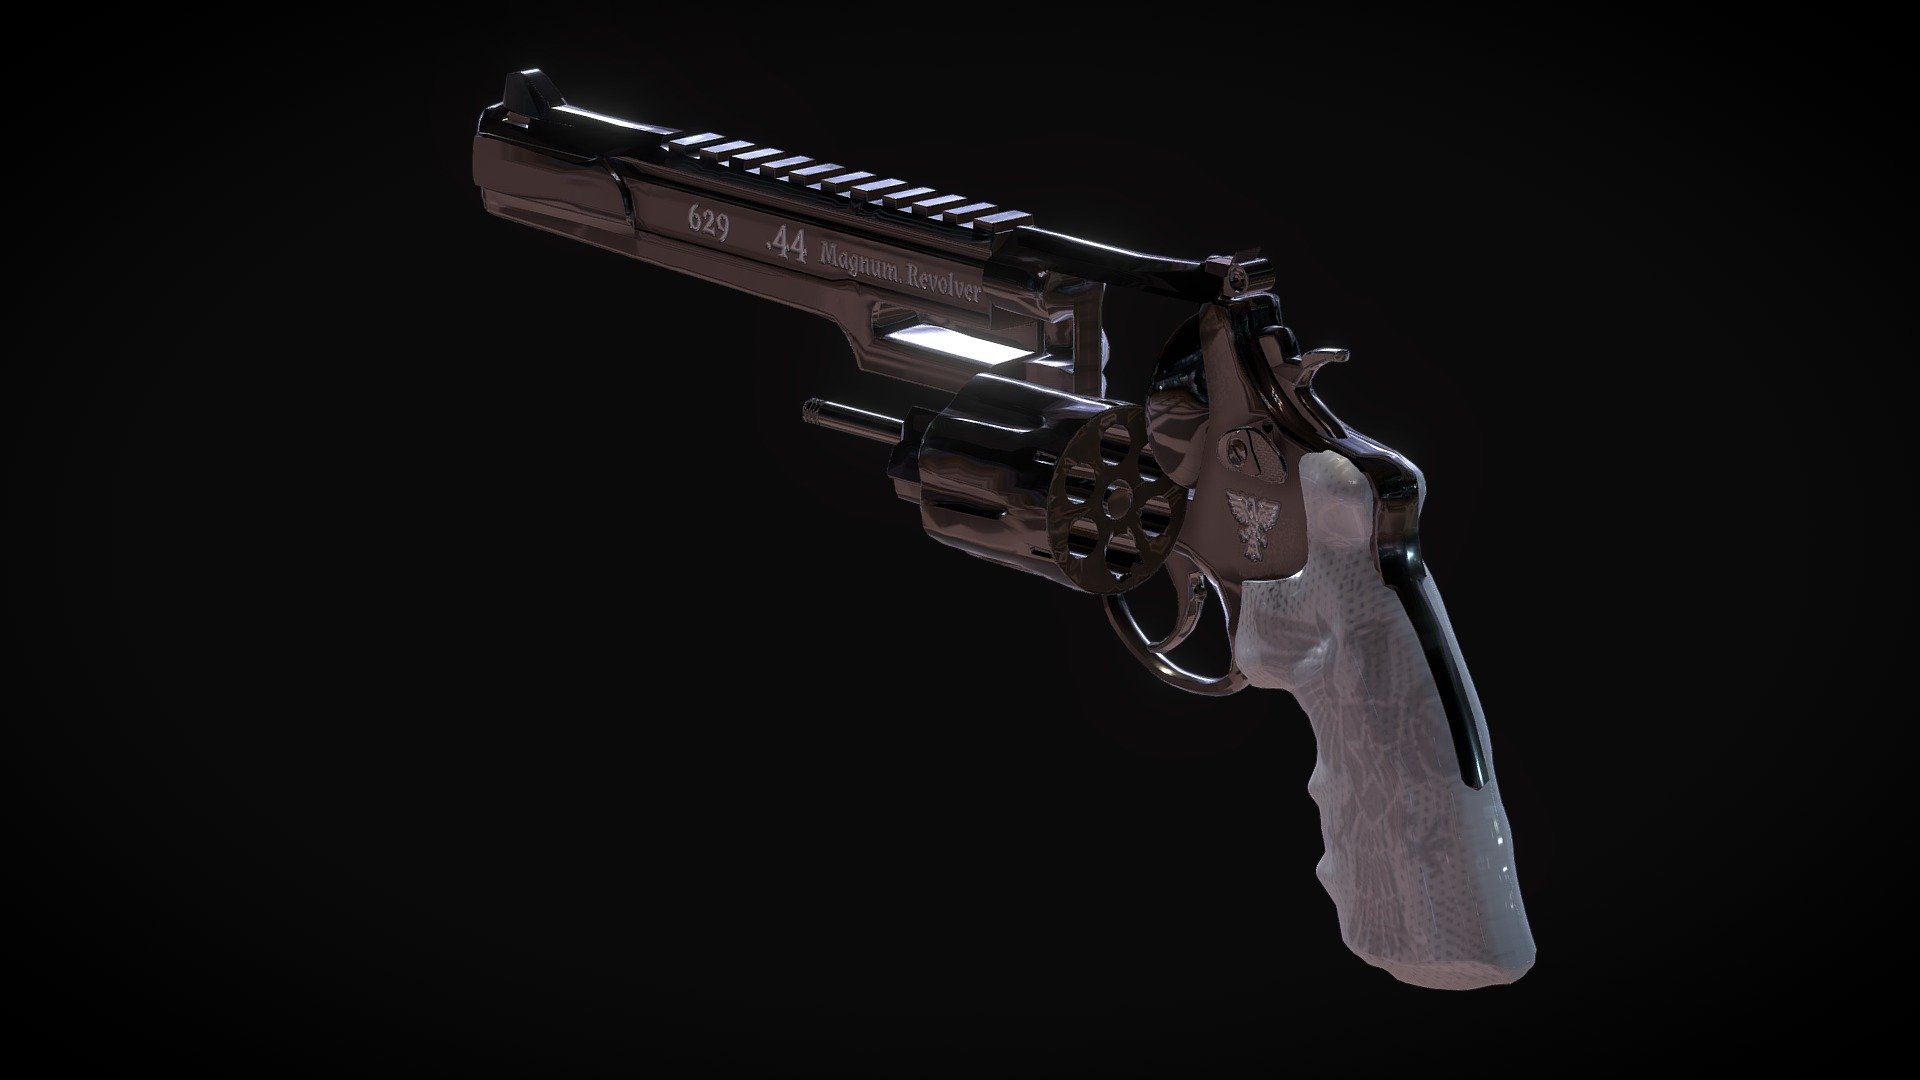 629 - .44 Magnum, Revolver. Performace model 3d model